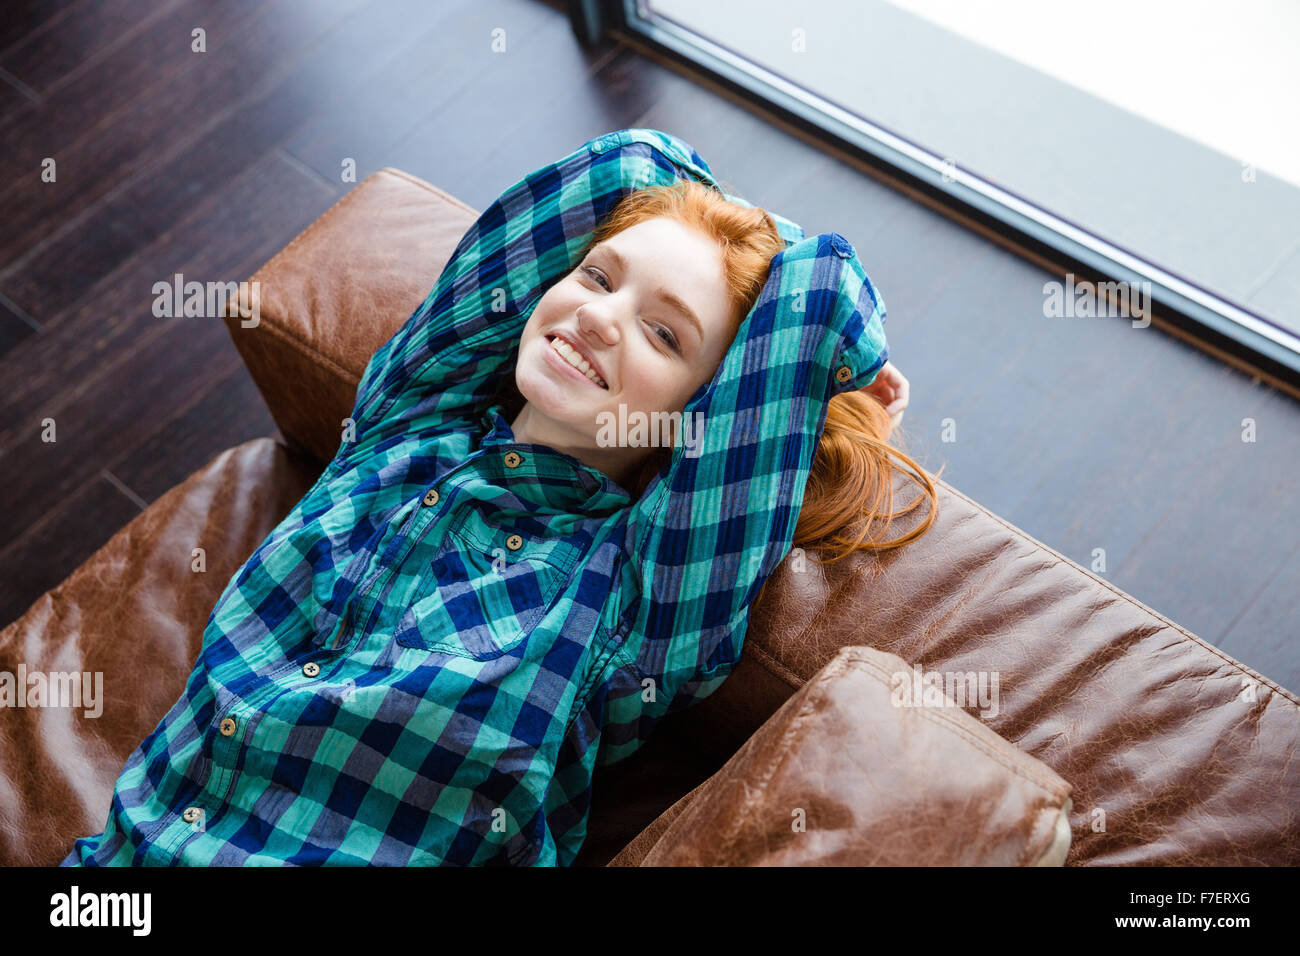 Rilassato positivo redhead girl in blue plaid shirt appoggiato sulla pelle marrone lettino Foto Stock